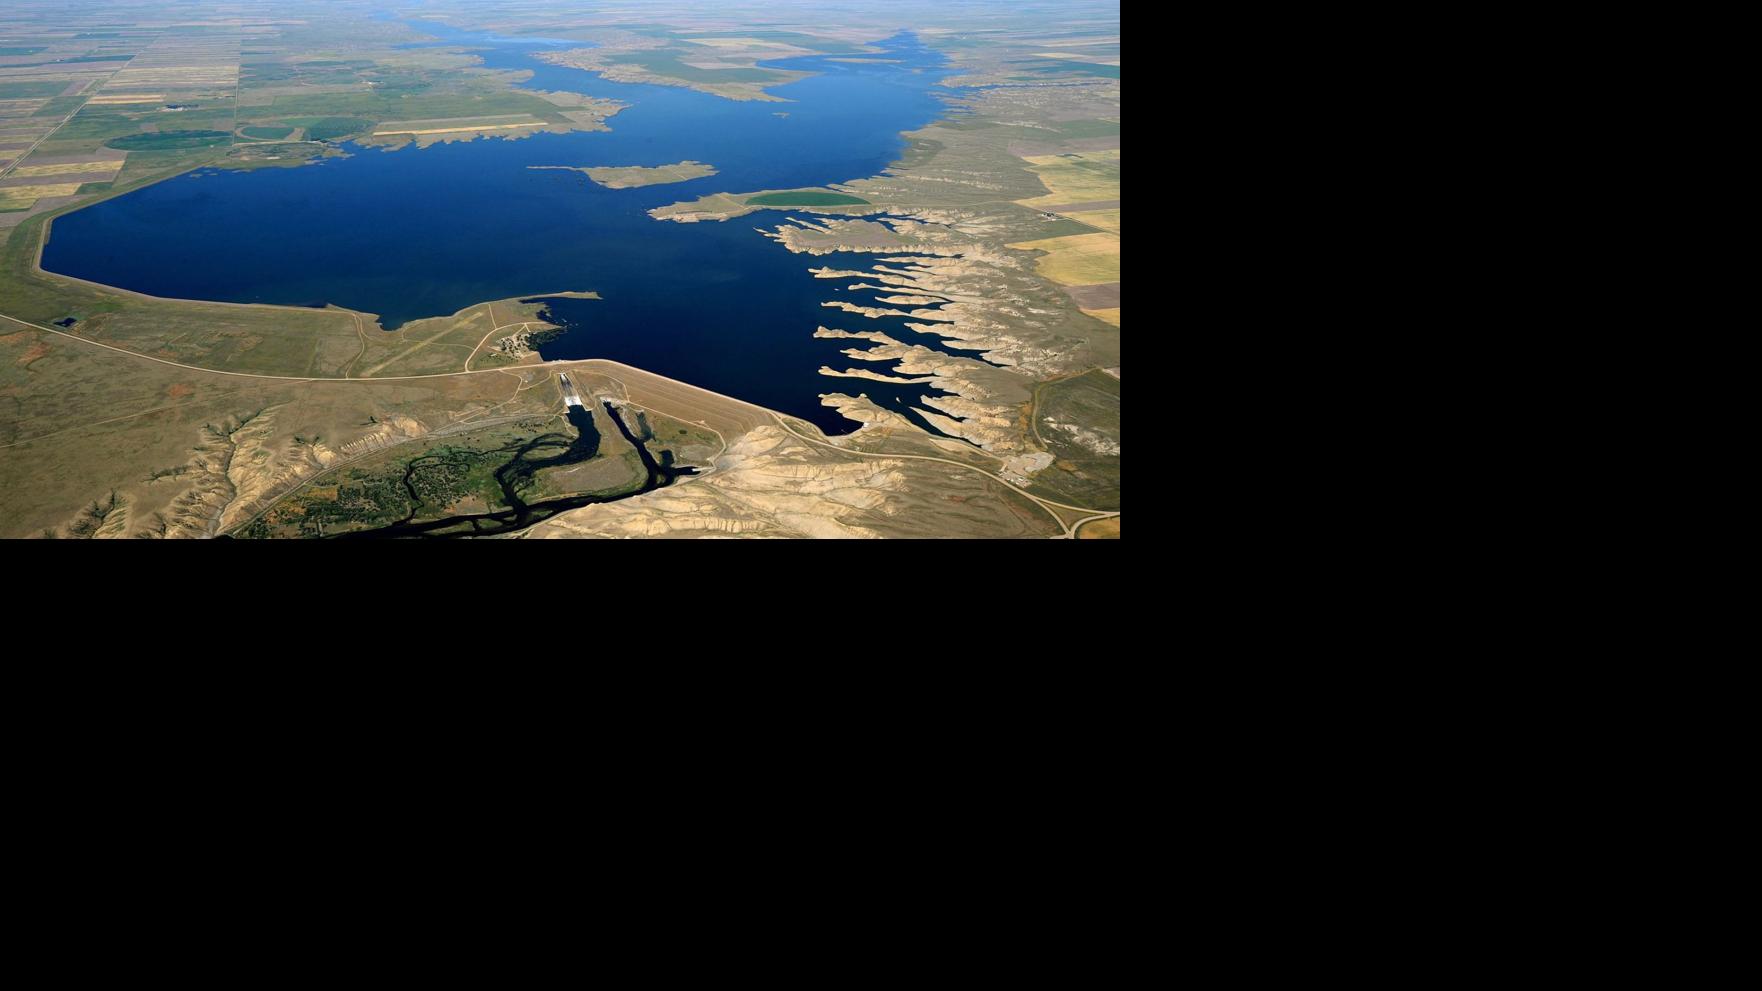 Aerial photographs of Montana lakes Local billingsgazette com